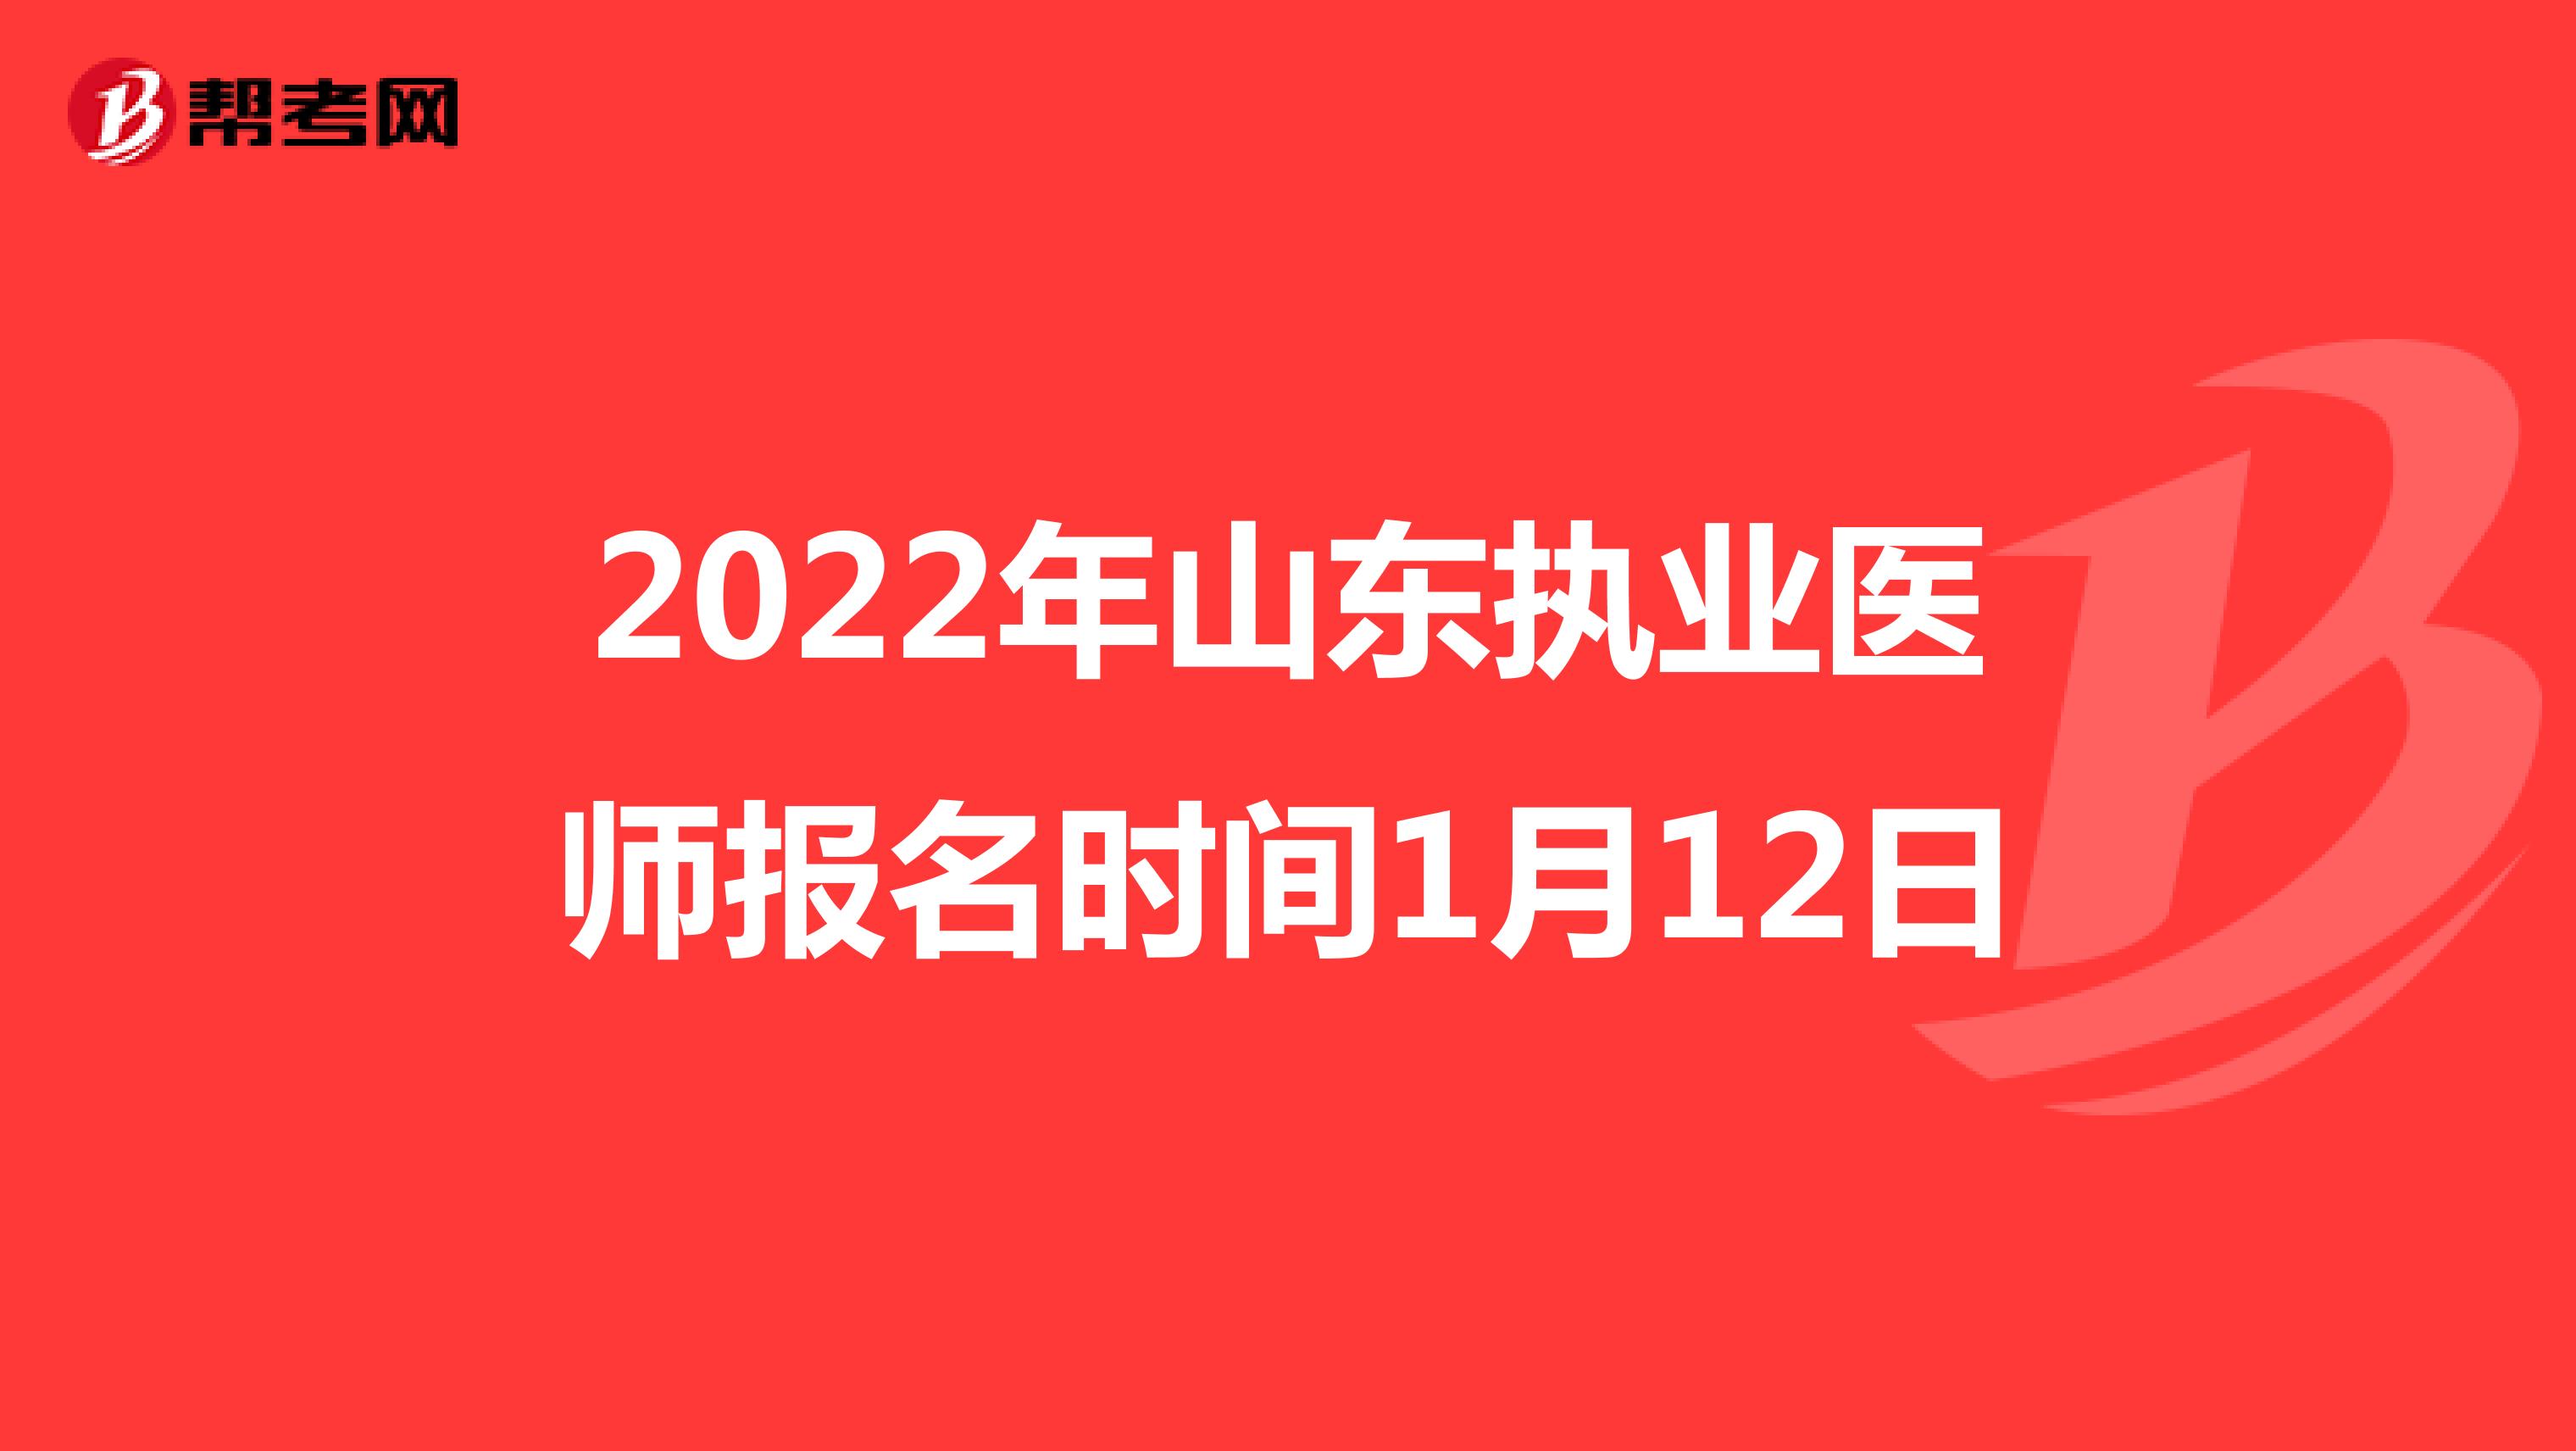 2022年山东执业医师报名时间1月12日